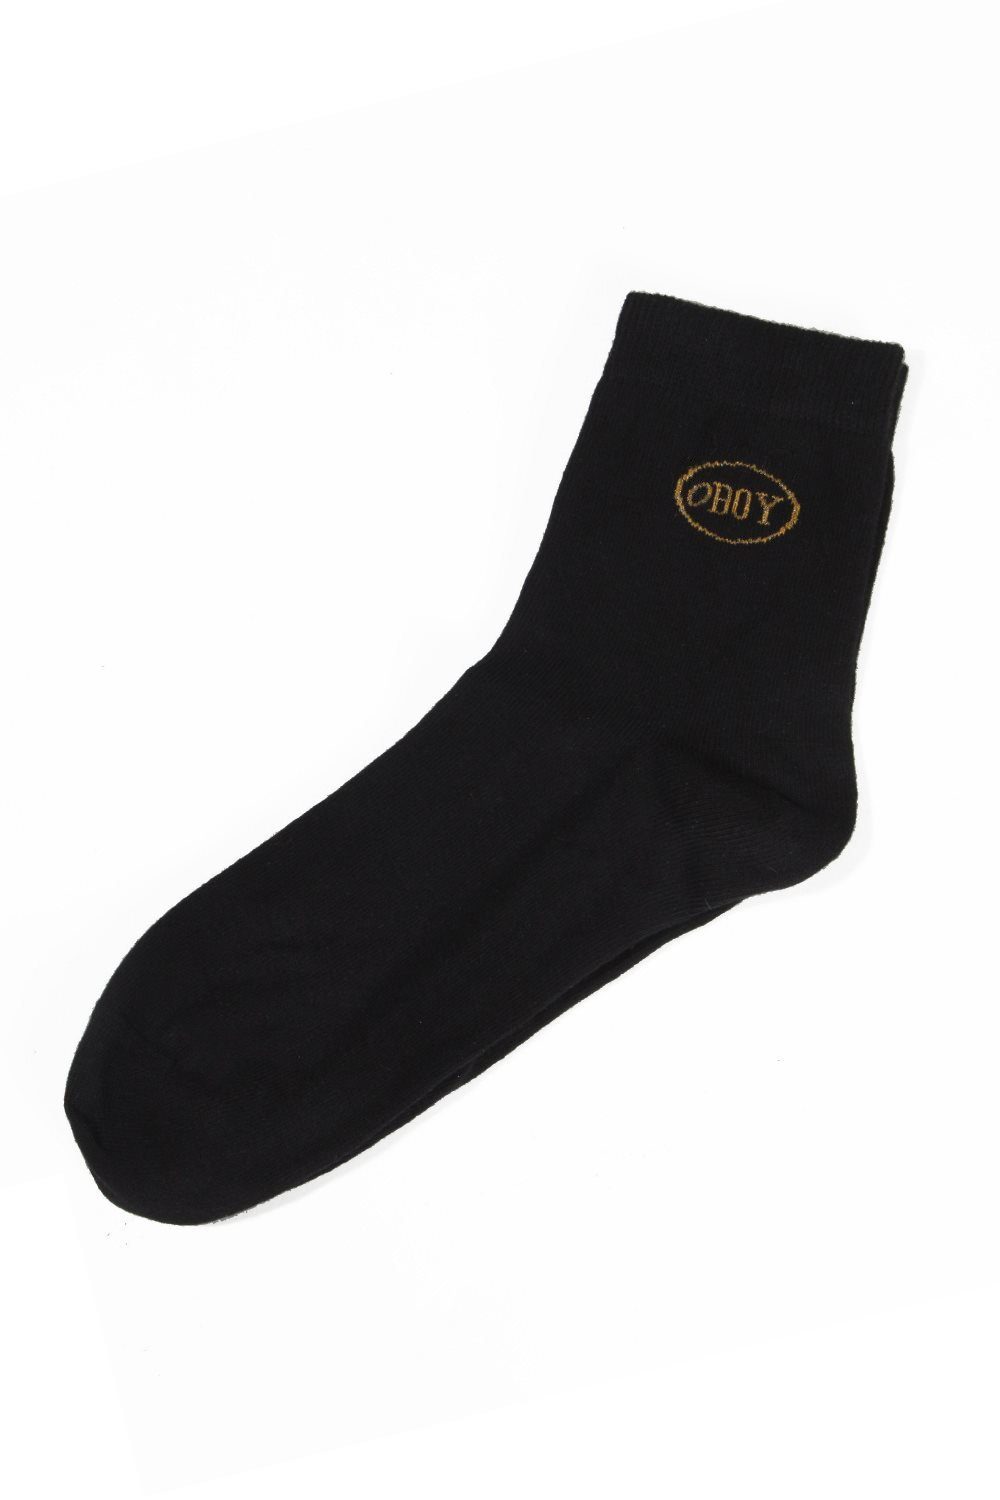 Wäsche/Bademode Socken Oboy Socken